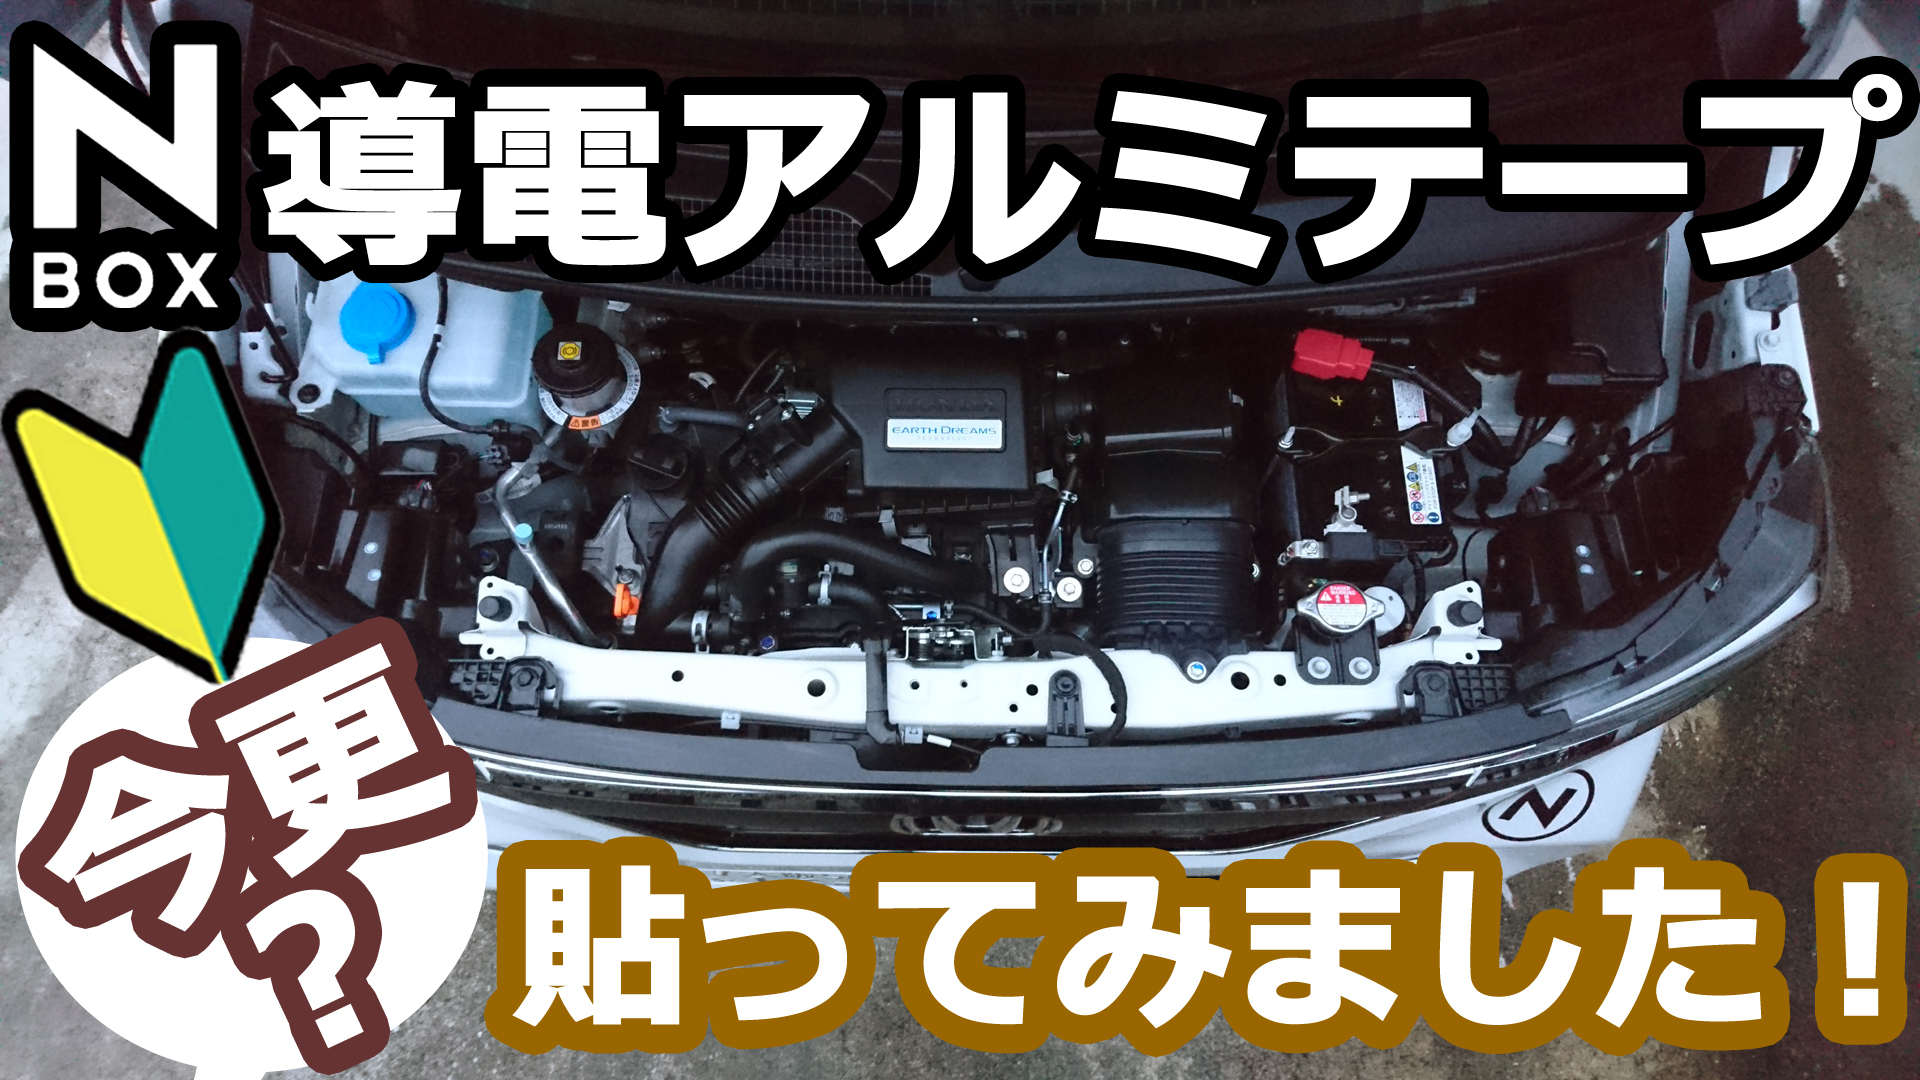 Honda N Box アルミテープチューン始めました Momotaroが実感した激変効果 は２つ Momotaro Blog